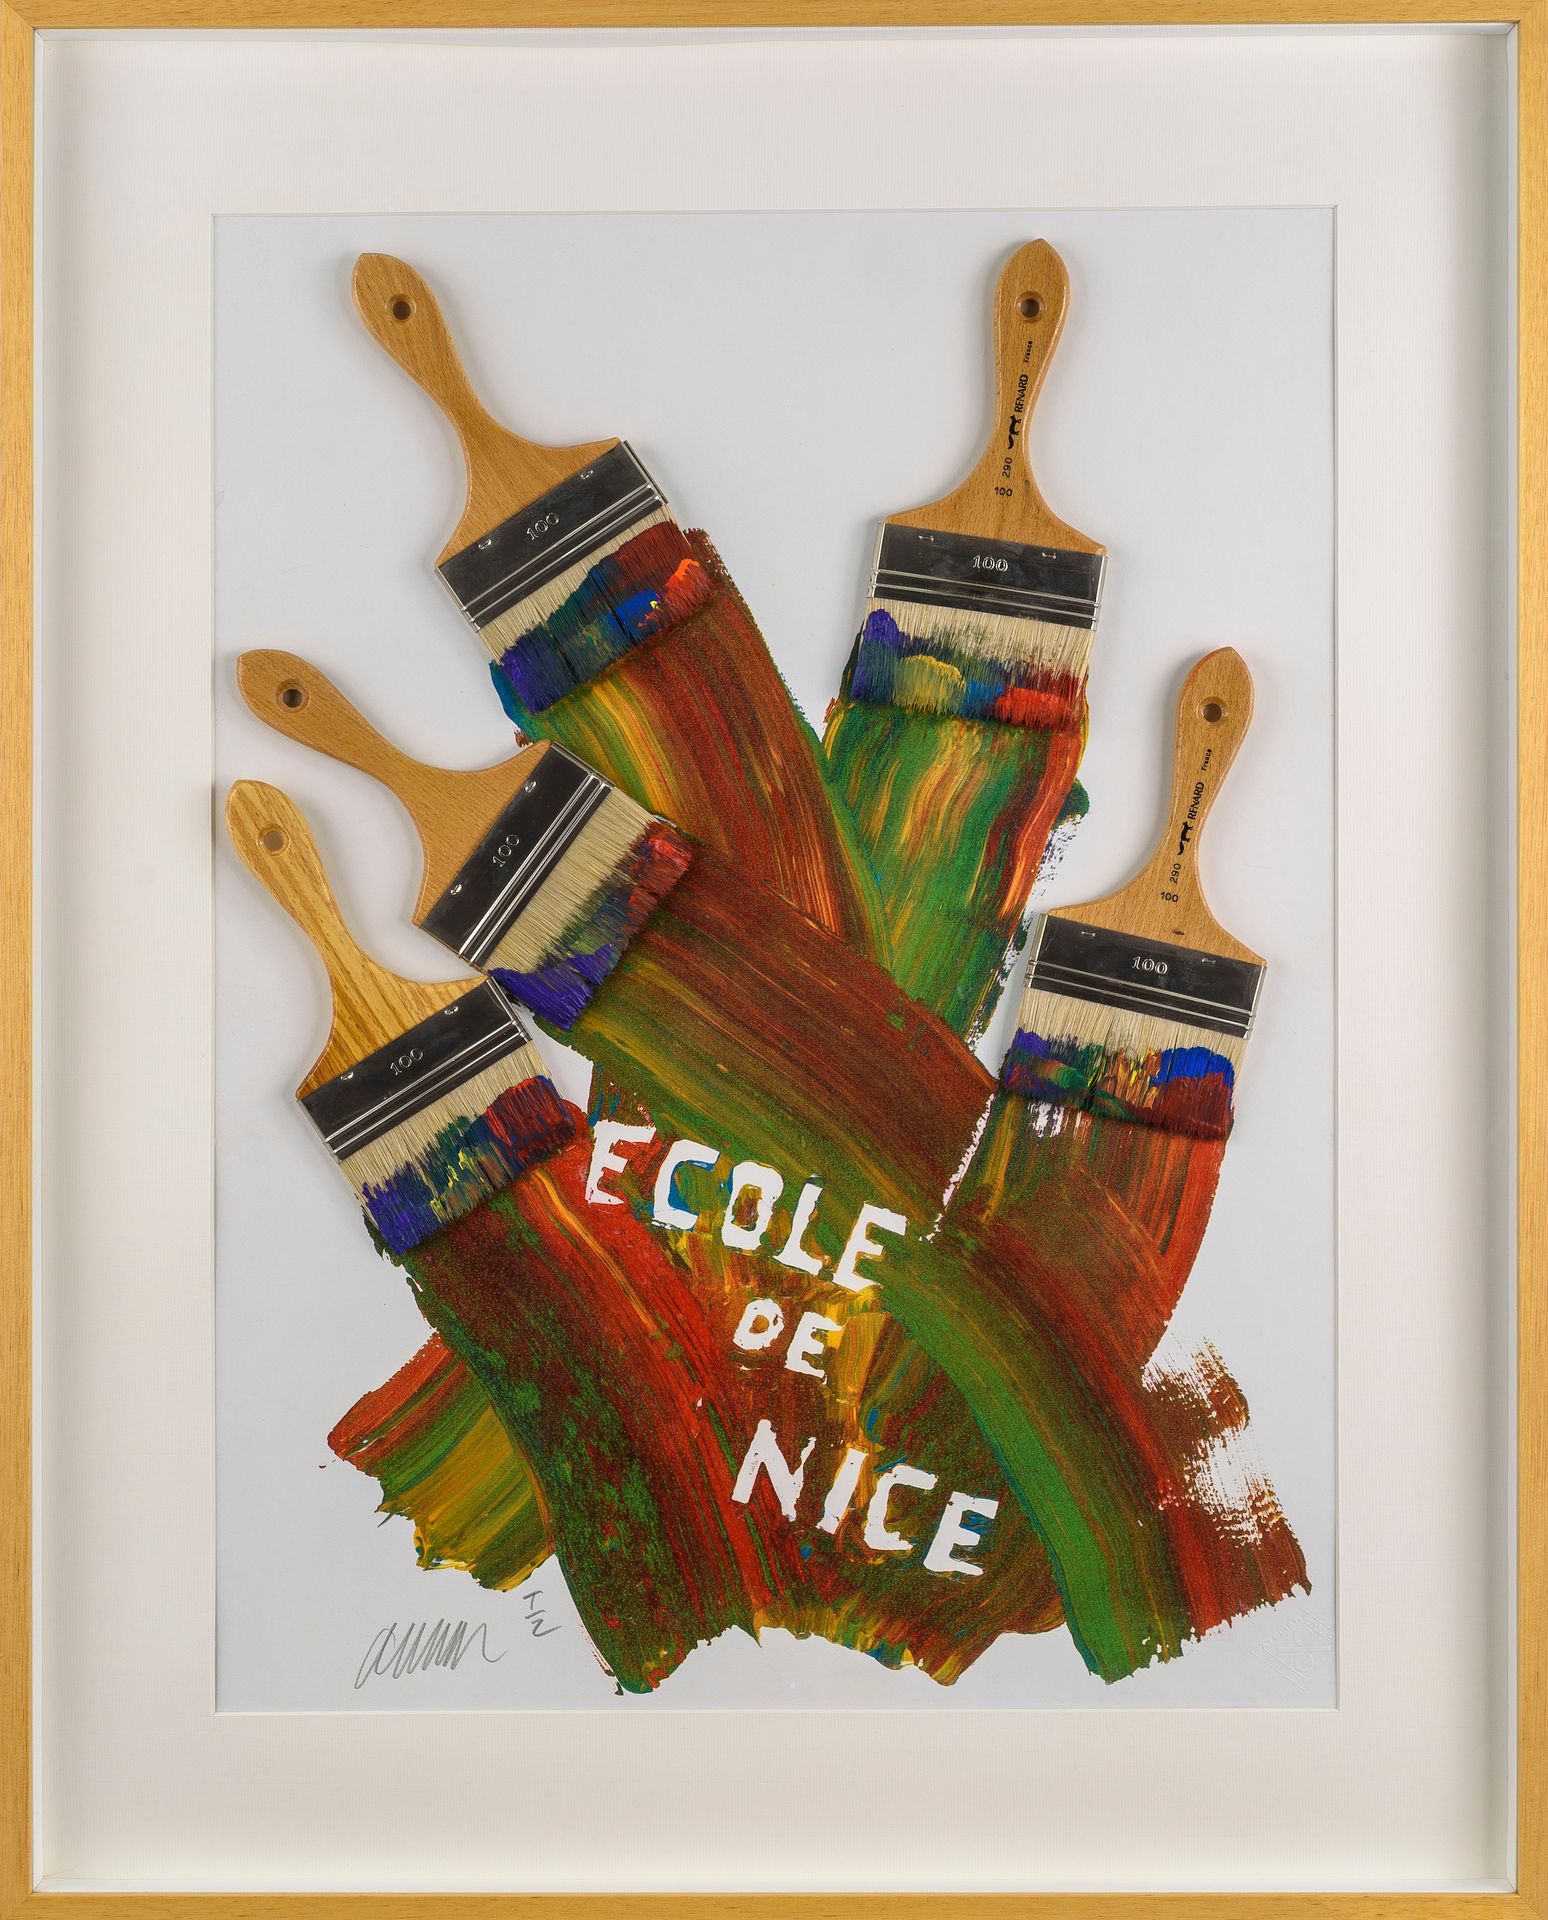 Null ARMAN (1928-2005)

Escuela de Niza, 1987

Fotograbado con pinceles reales

&hellip;